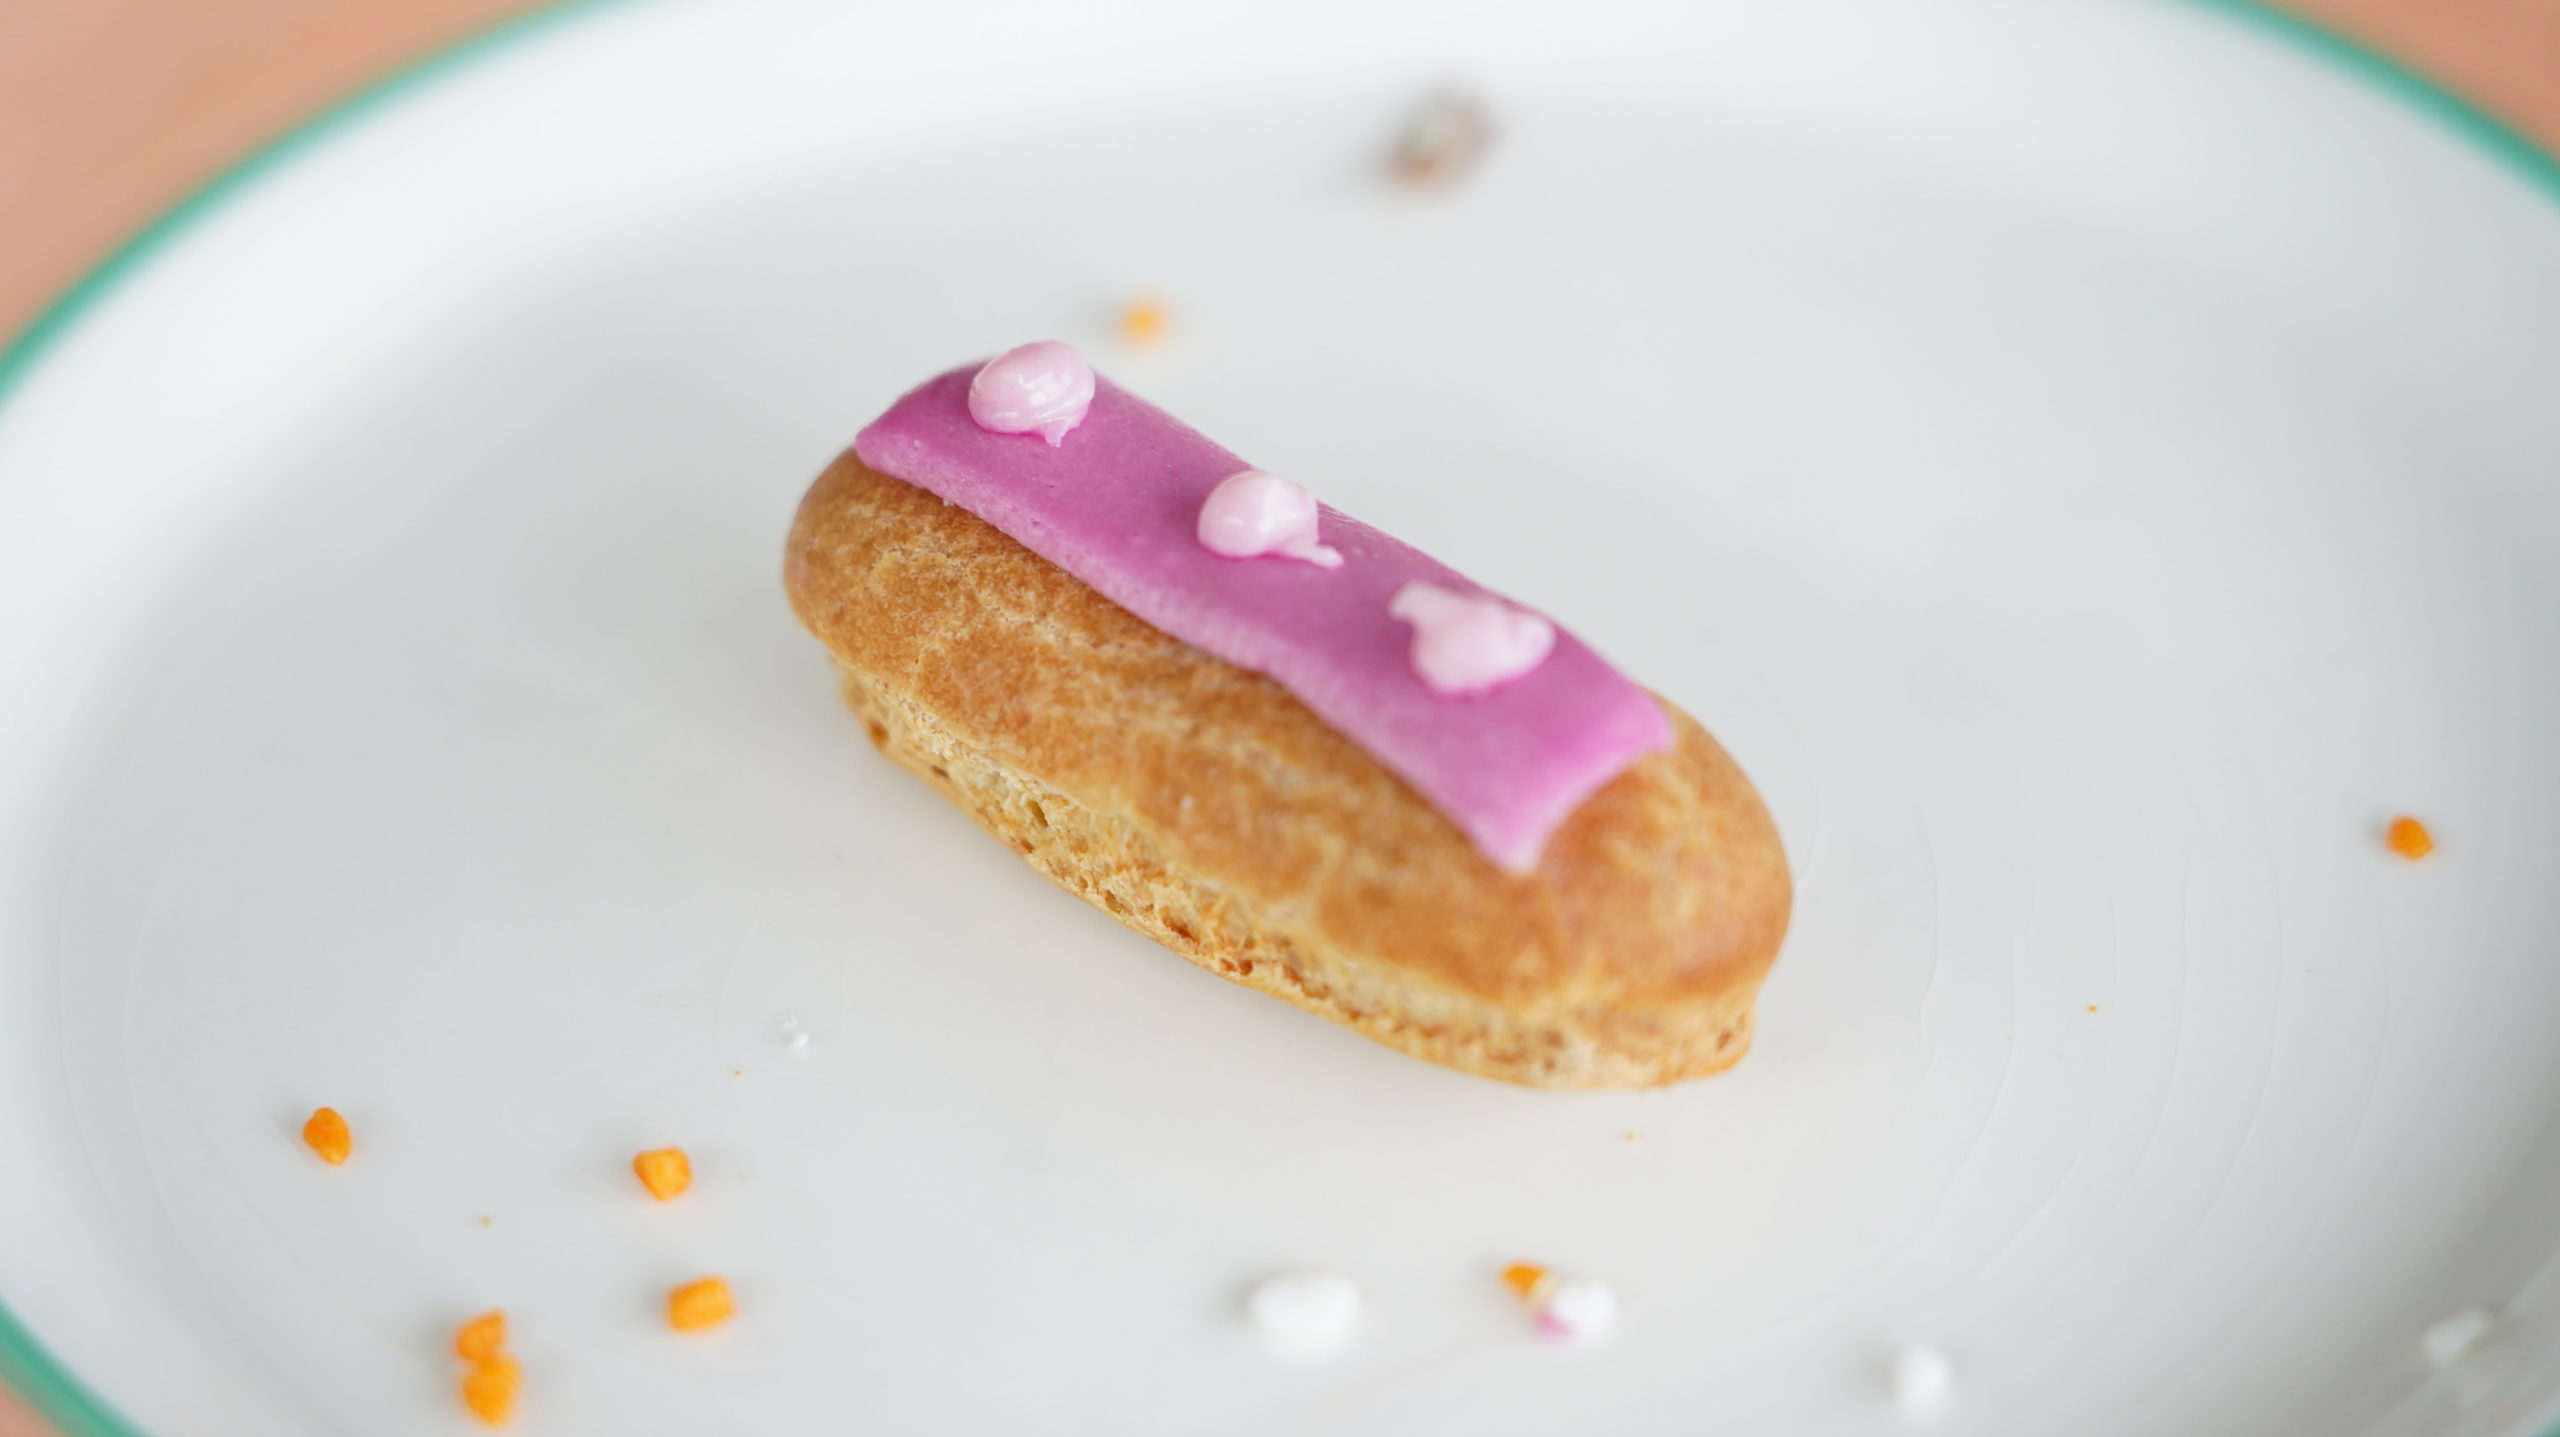 ピカールの冷凍食品「食いしん坊のミニエクレア」のフランボワーズ味の写真